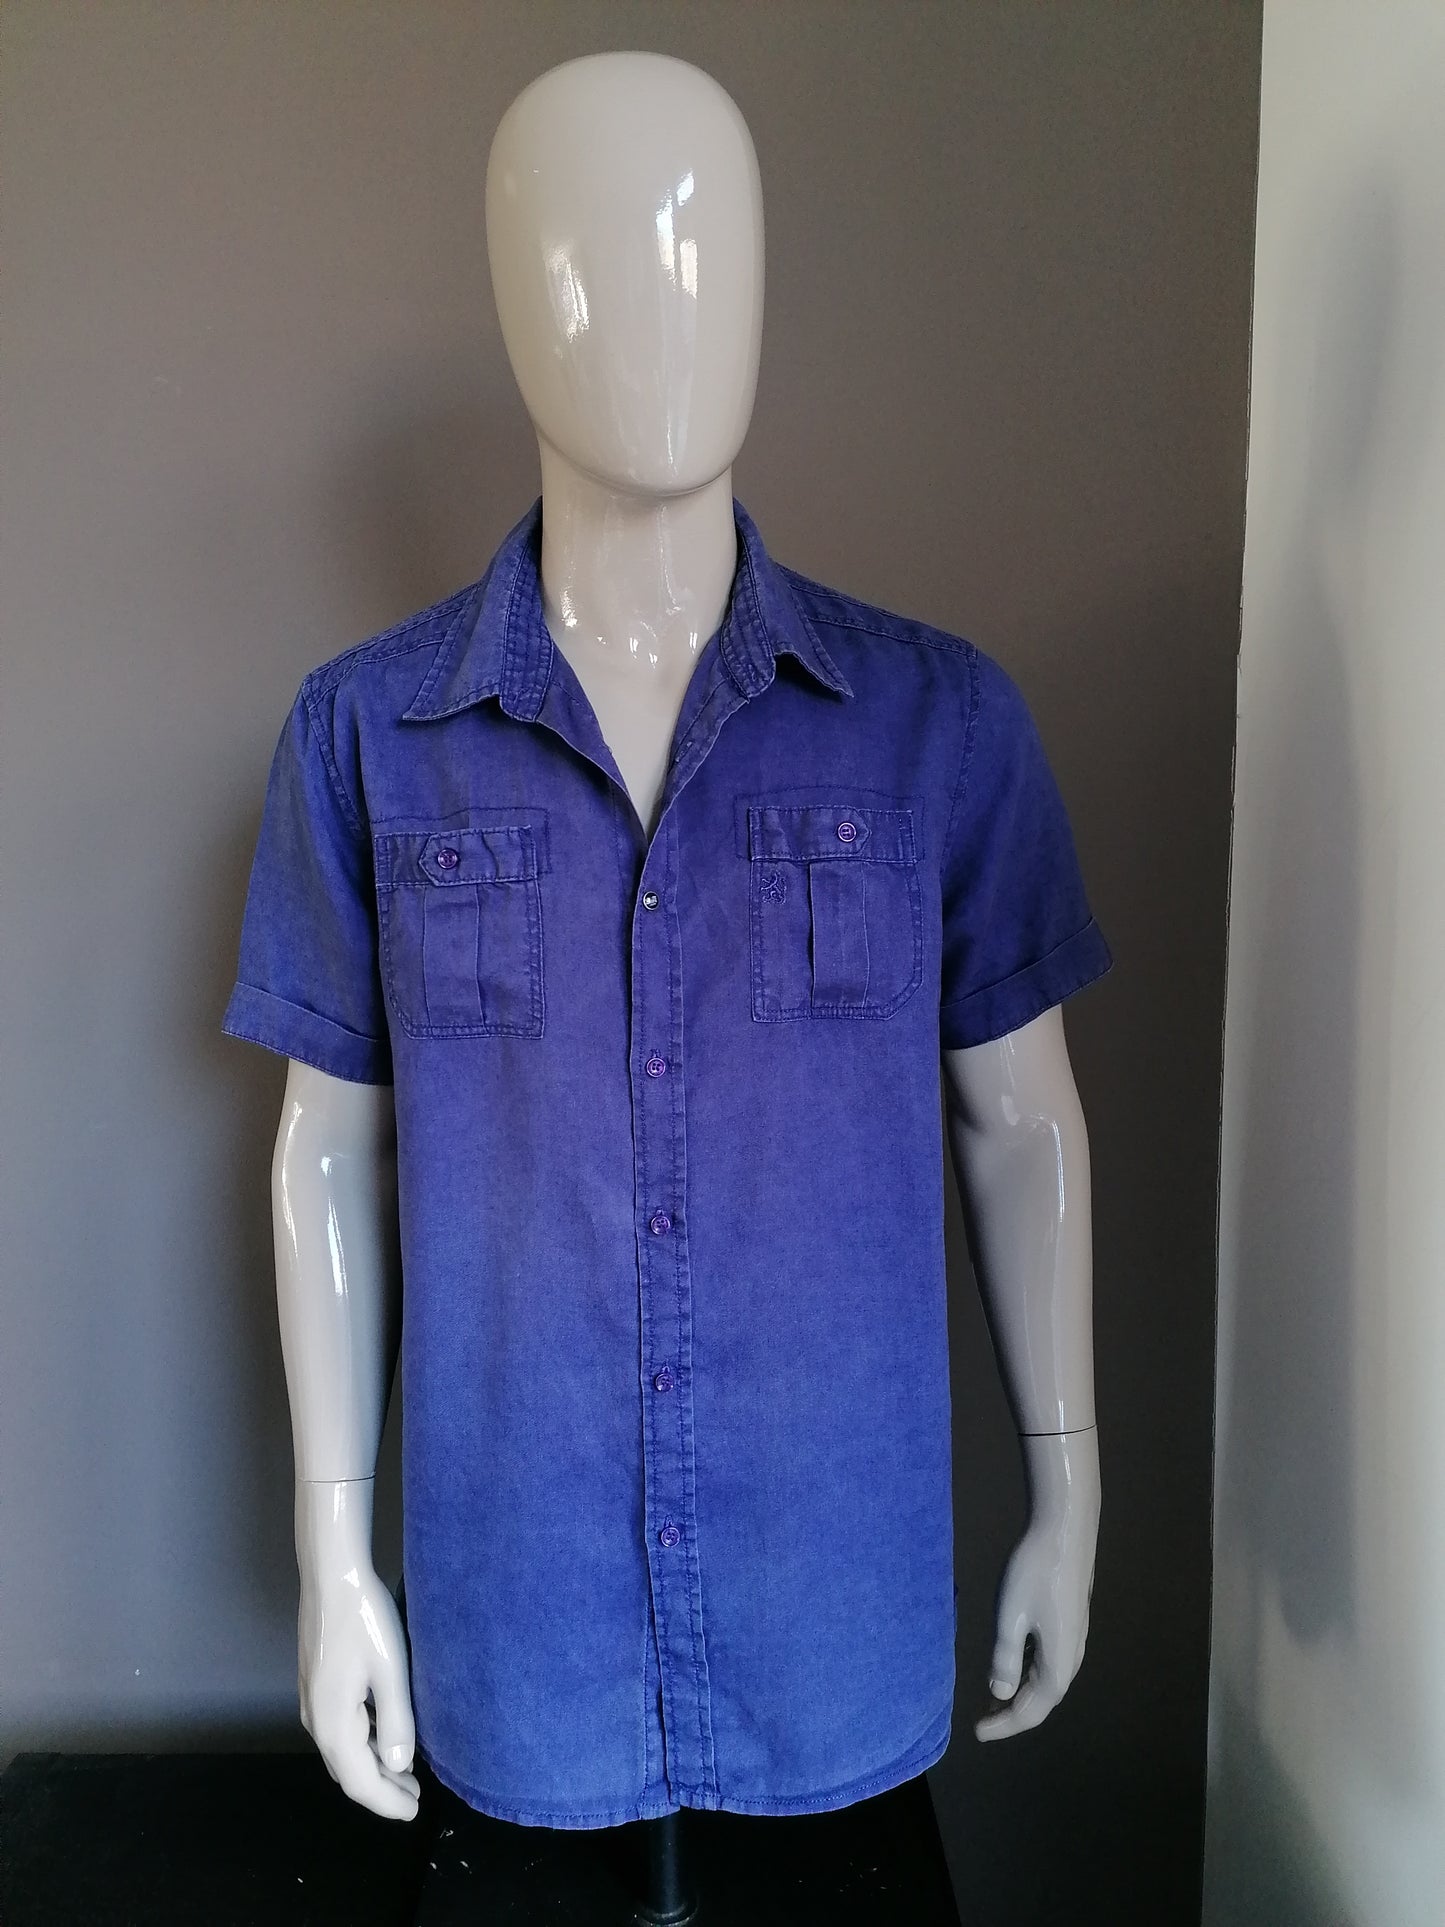 Camisa de lino de relackz mangas cortas. Azul oscuro. Tamaño XXL / 2XL